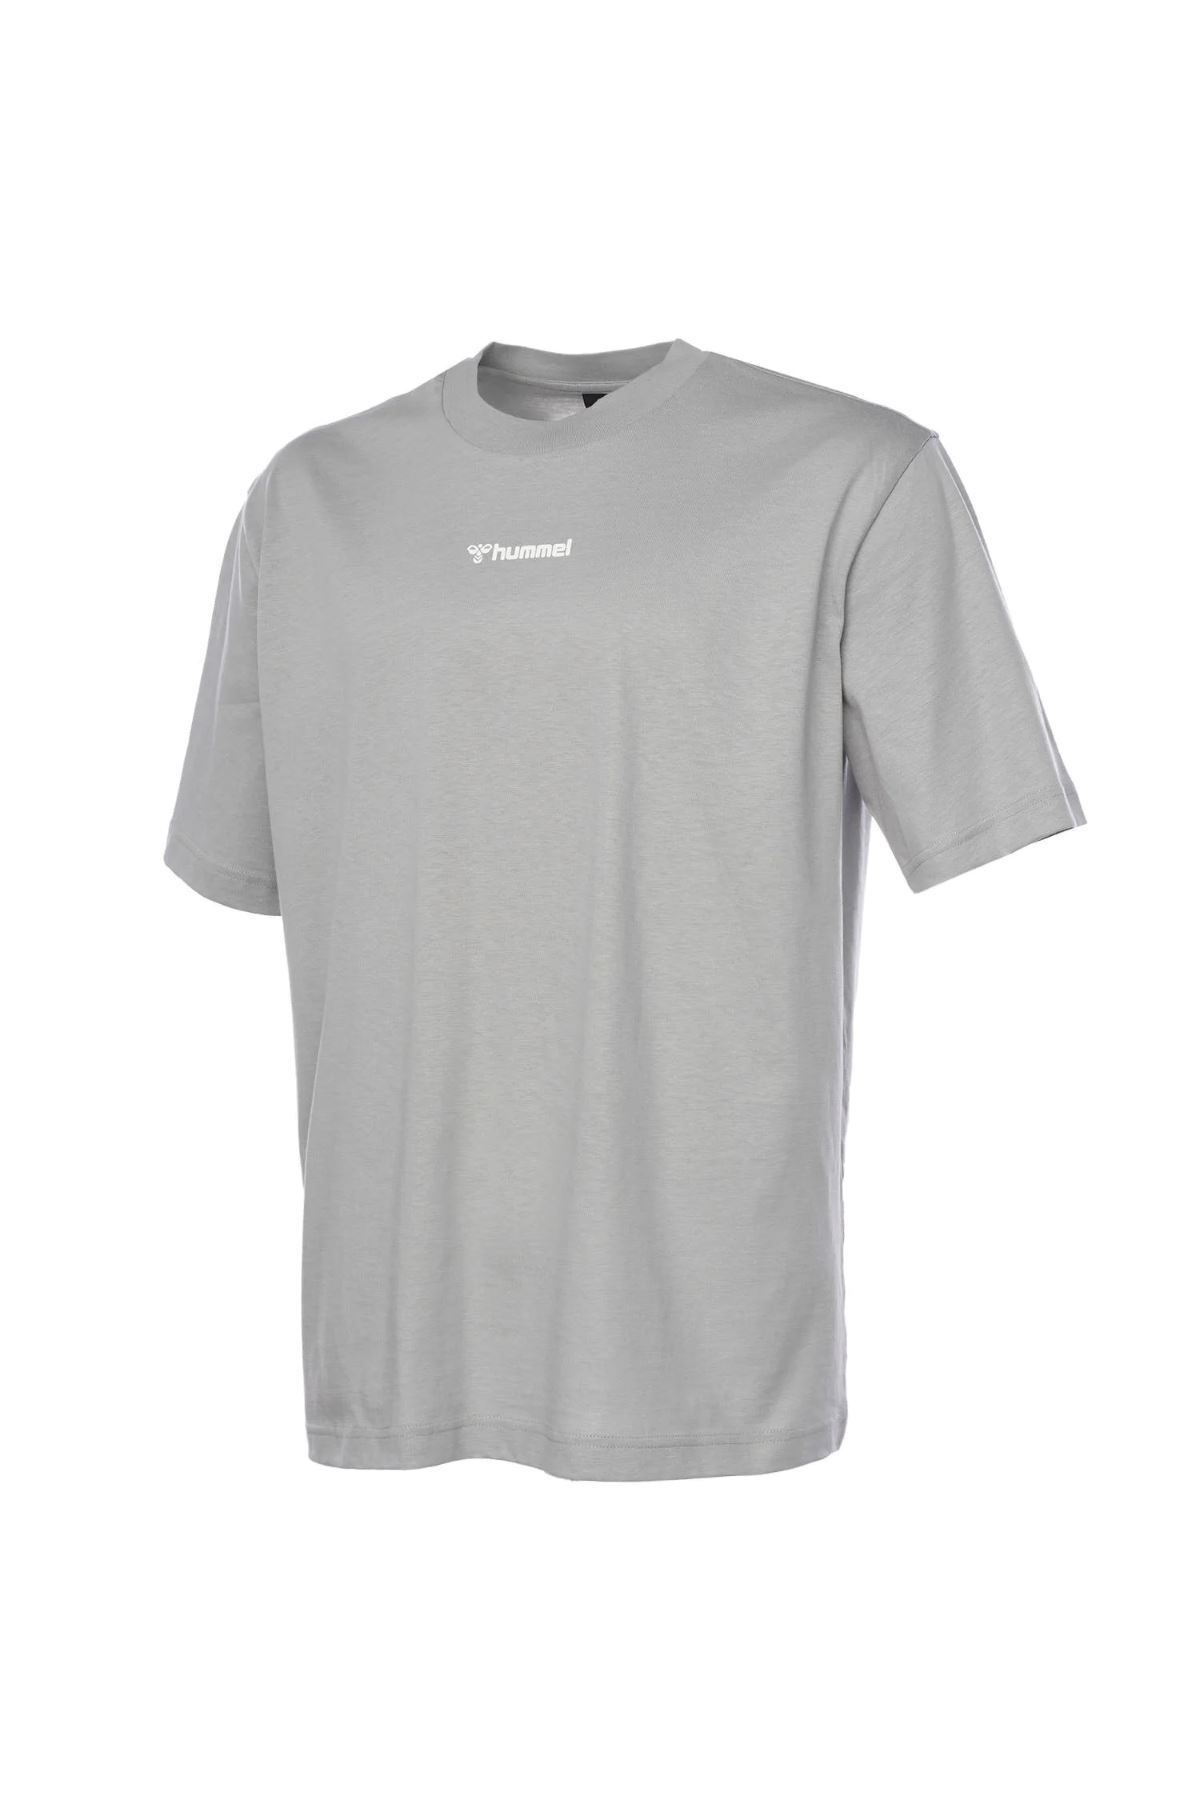 hummel Hmlsean Oversıze T-shırt S/s Erkek T-shirt 911856-2521 Ultımate Gray